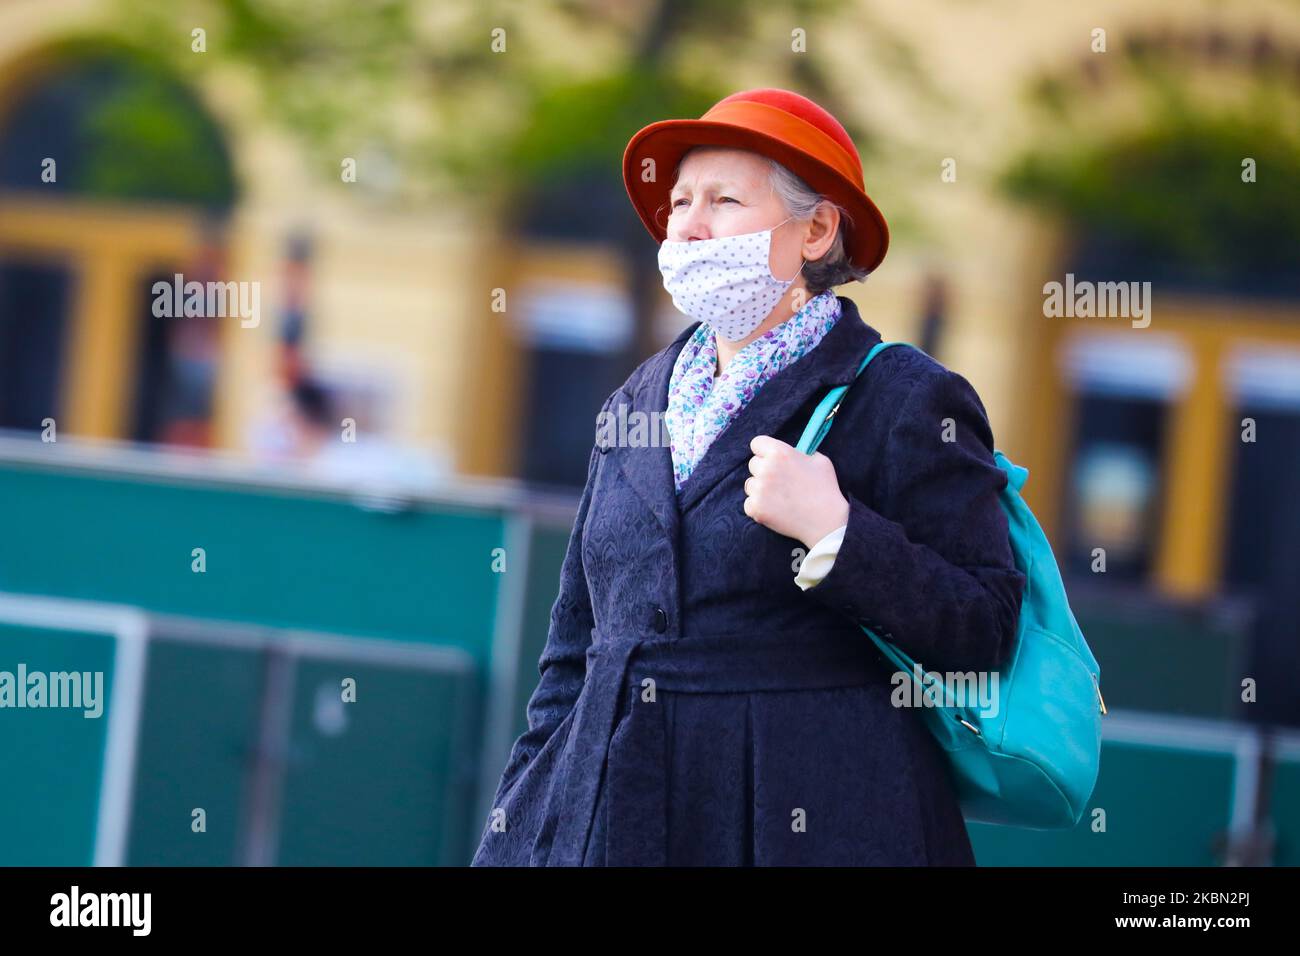 A causa della diffusione del coronavirus, una donna indossa una maschera protettiva. Cracovia, Polonia il 28 aprile 2020. La regola di coprire il naso e la bocca in luoghi pubblici con maschere facciali, intarsi o fazzoletti è entrata in vigore dall'aprile 16th. L'ordine non si applica ai bambini fino all'età di due anni e alle persone che non sono in grado di coprire la bocca o il naso a causa di difficoltà respiratorie. (Foto di Beata Zawrzel/NurPhoto) Foto Stock